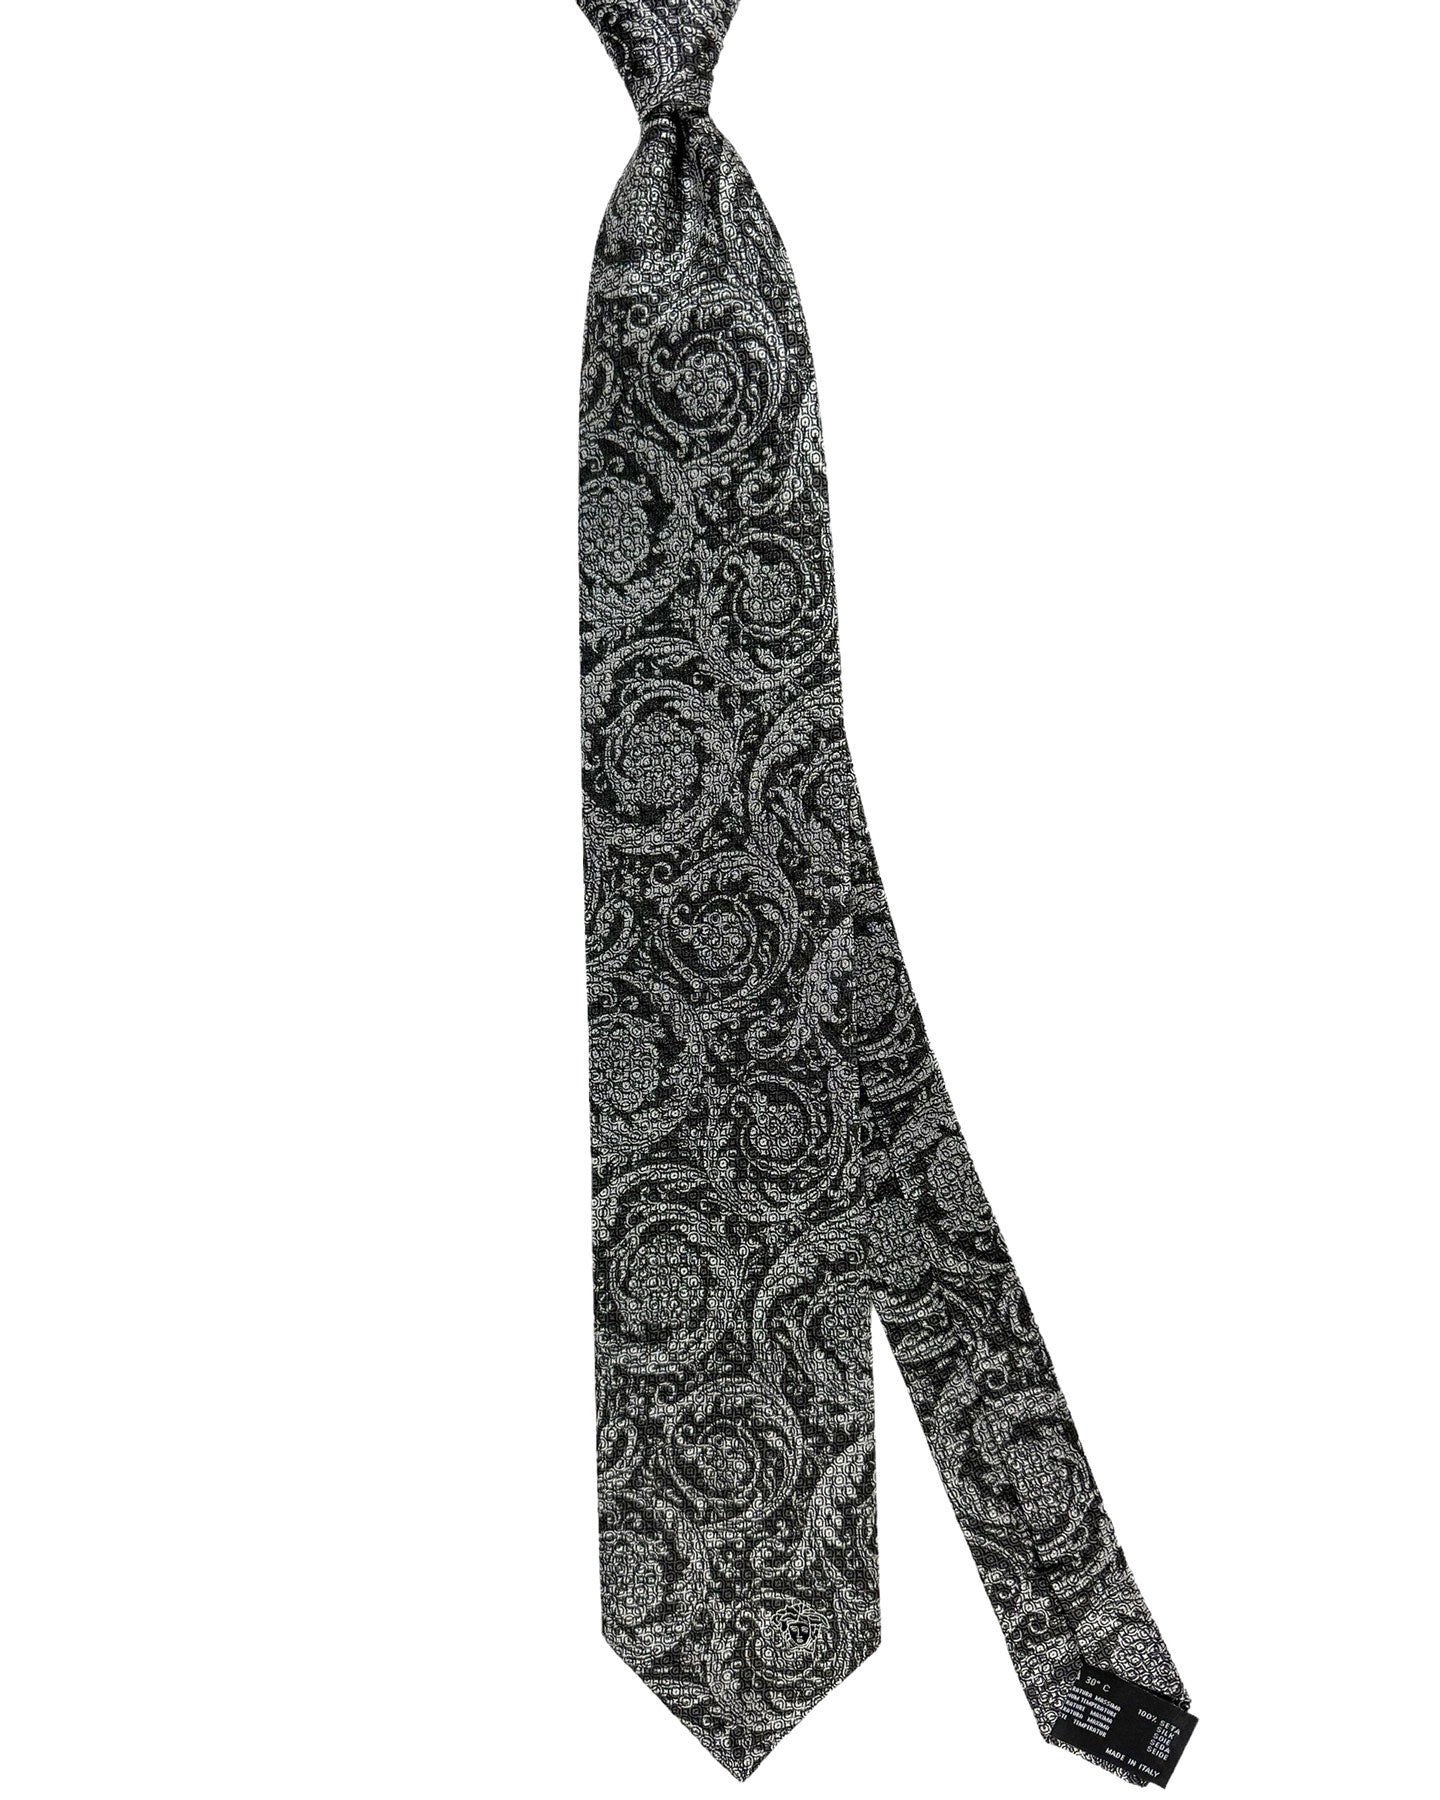 Versace Silk Tie Gray Baroque Design